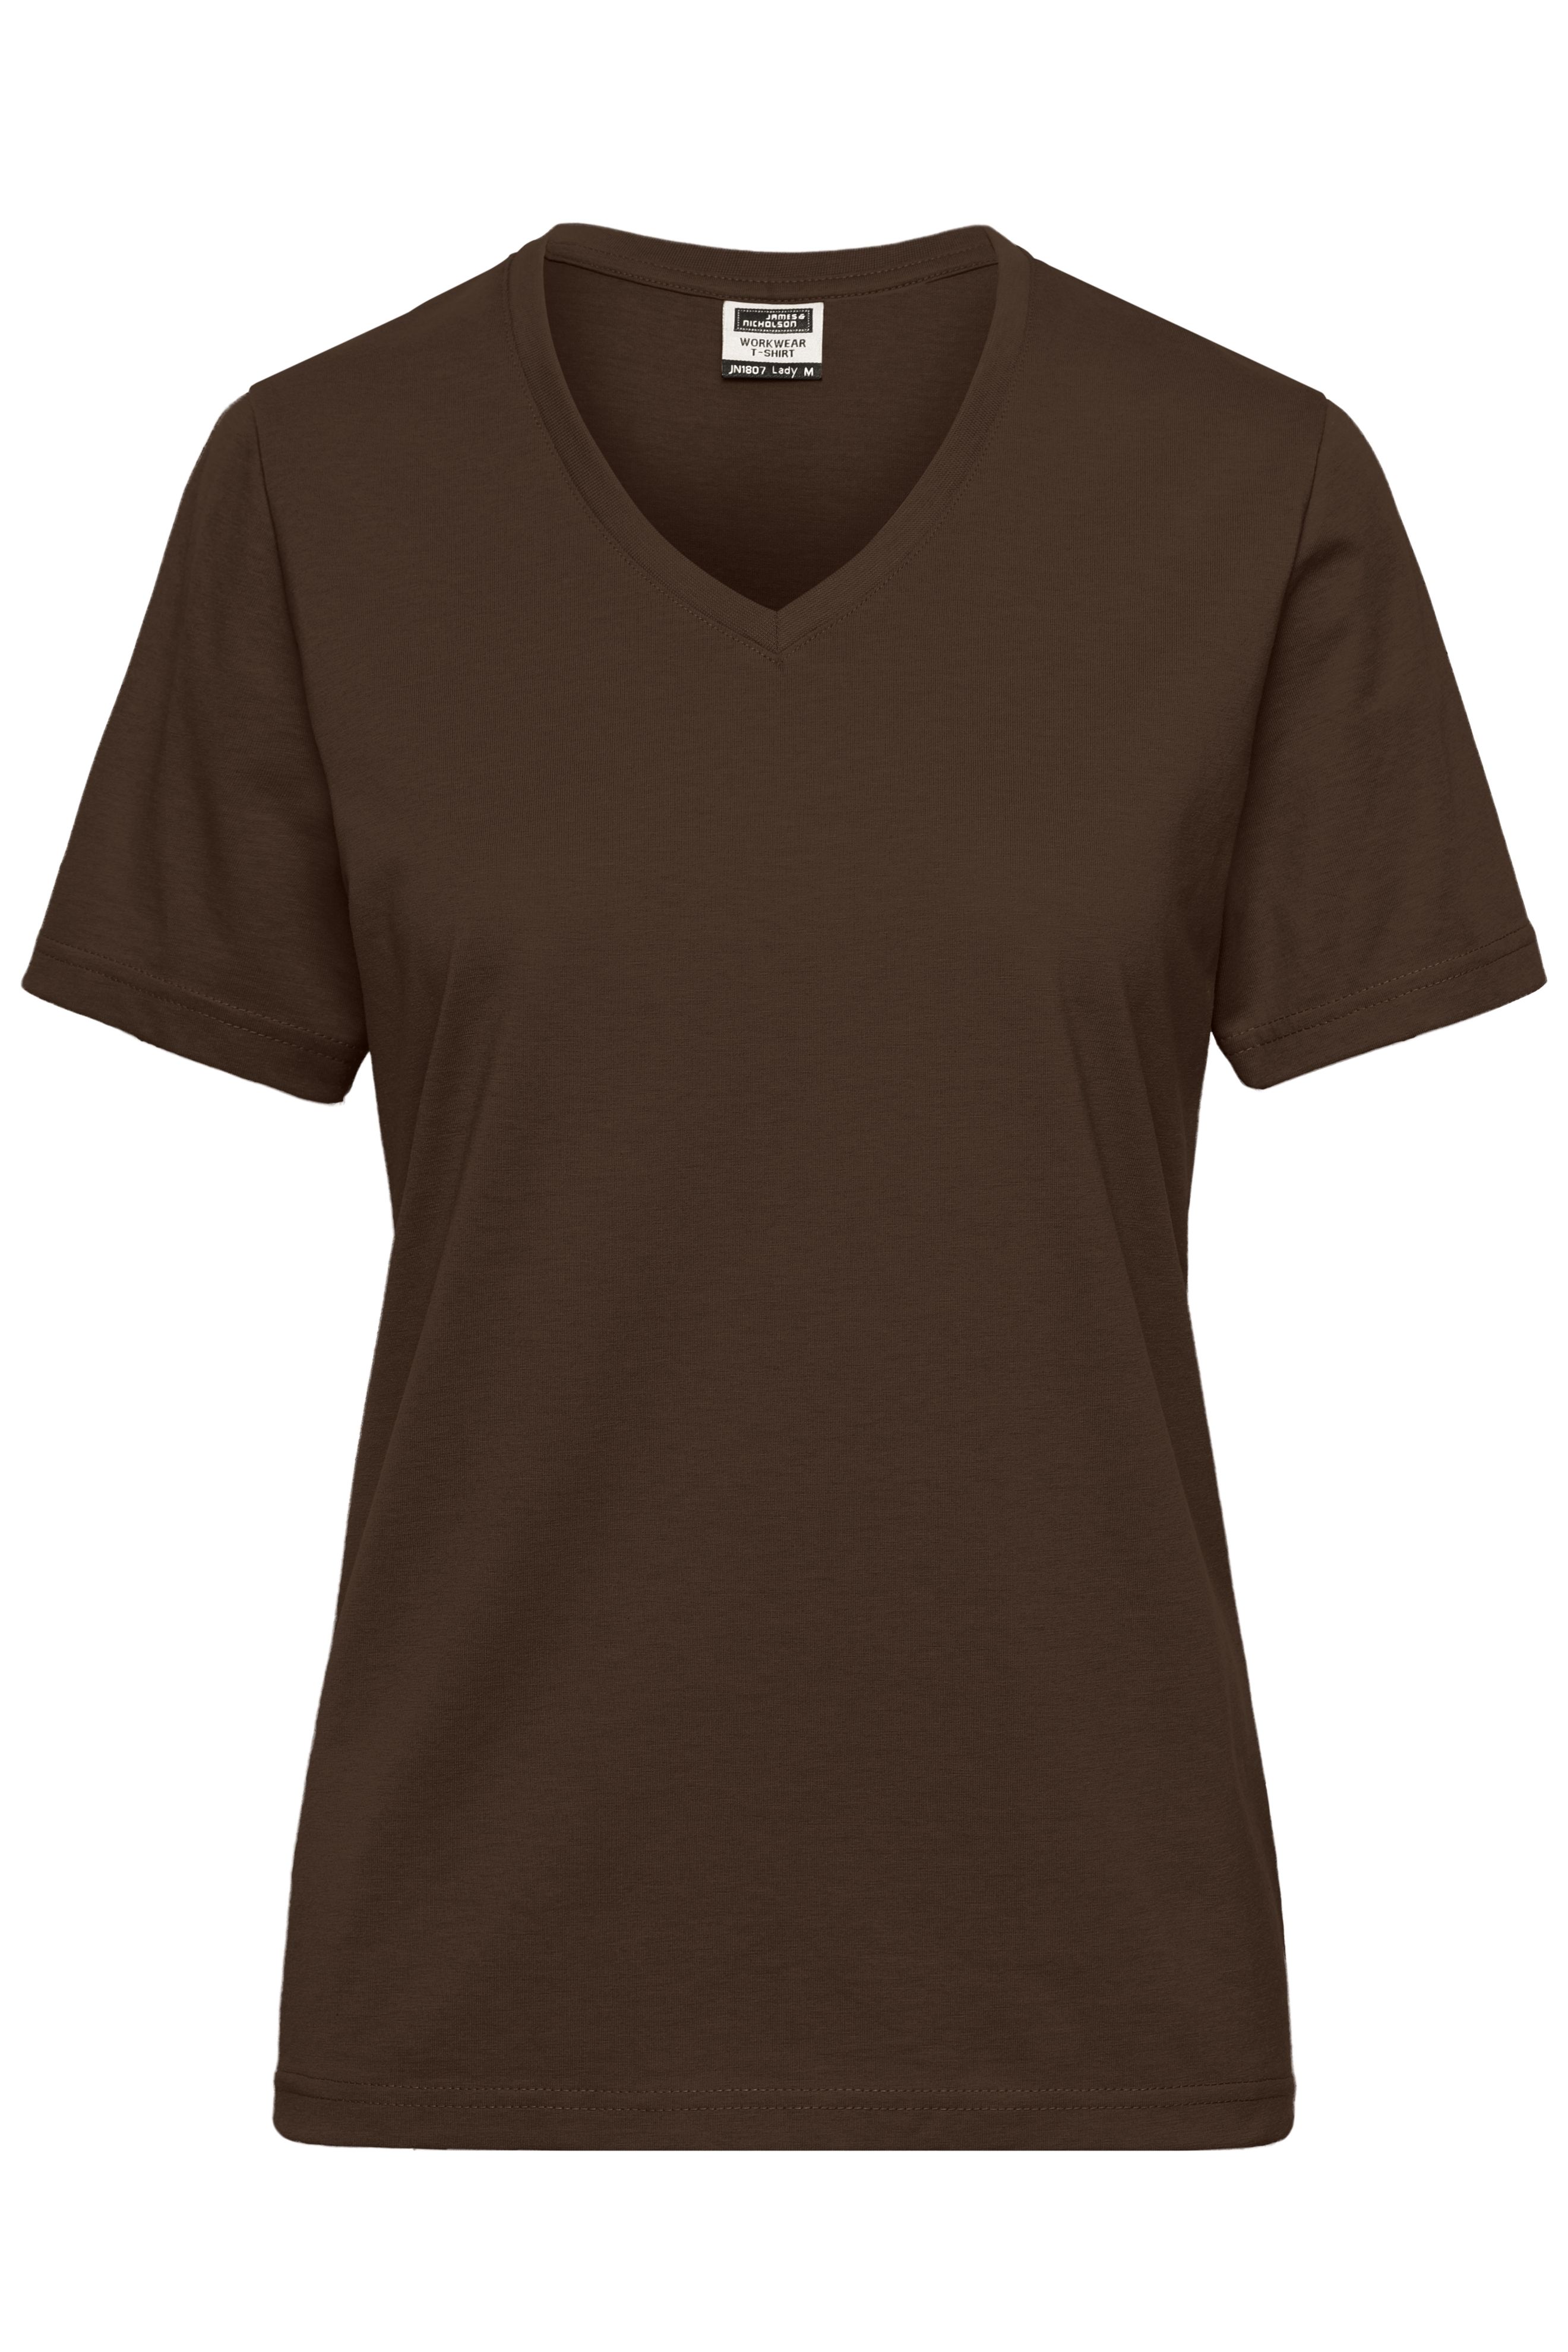 Ladies' BIO Workwear T-Shirt JN1807 Strapazierfähiges und pflegeleichtes T-Shirt